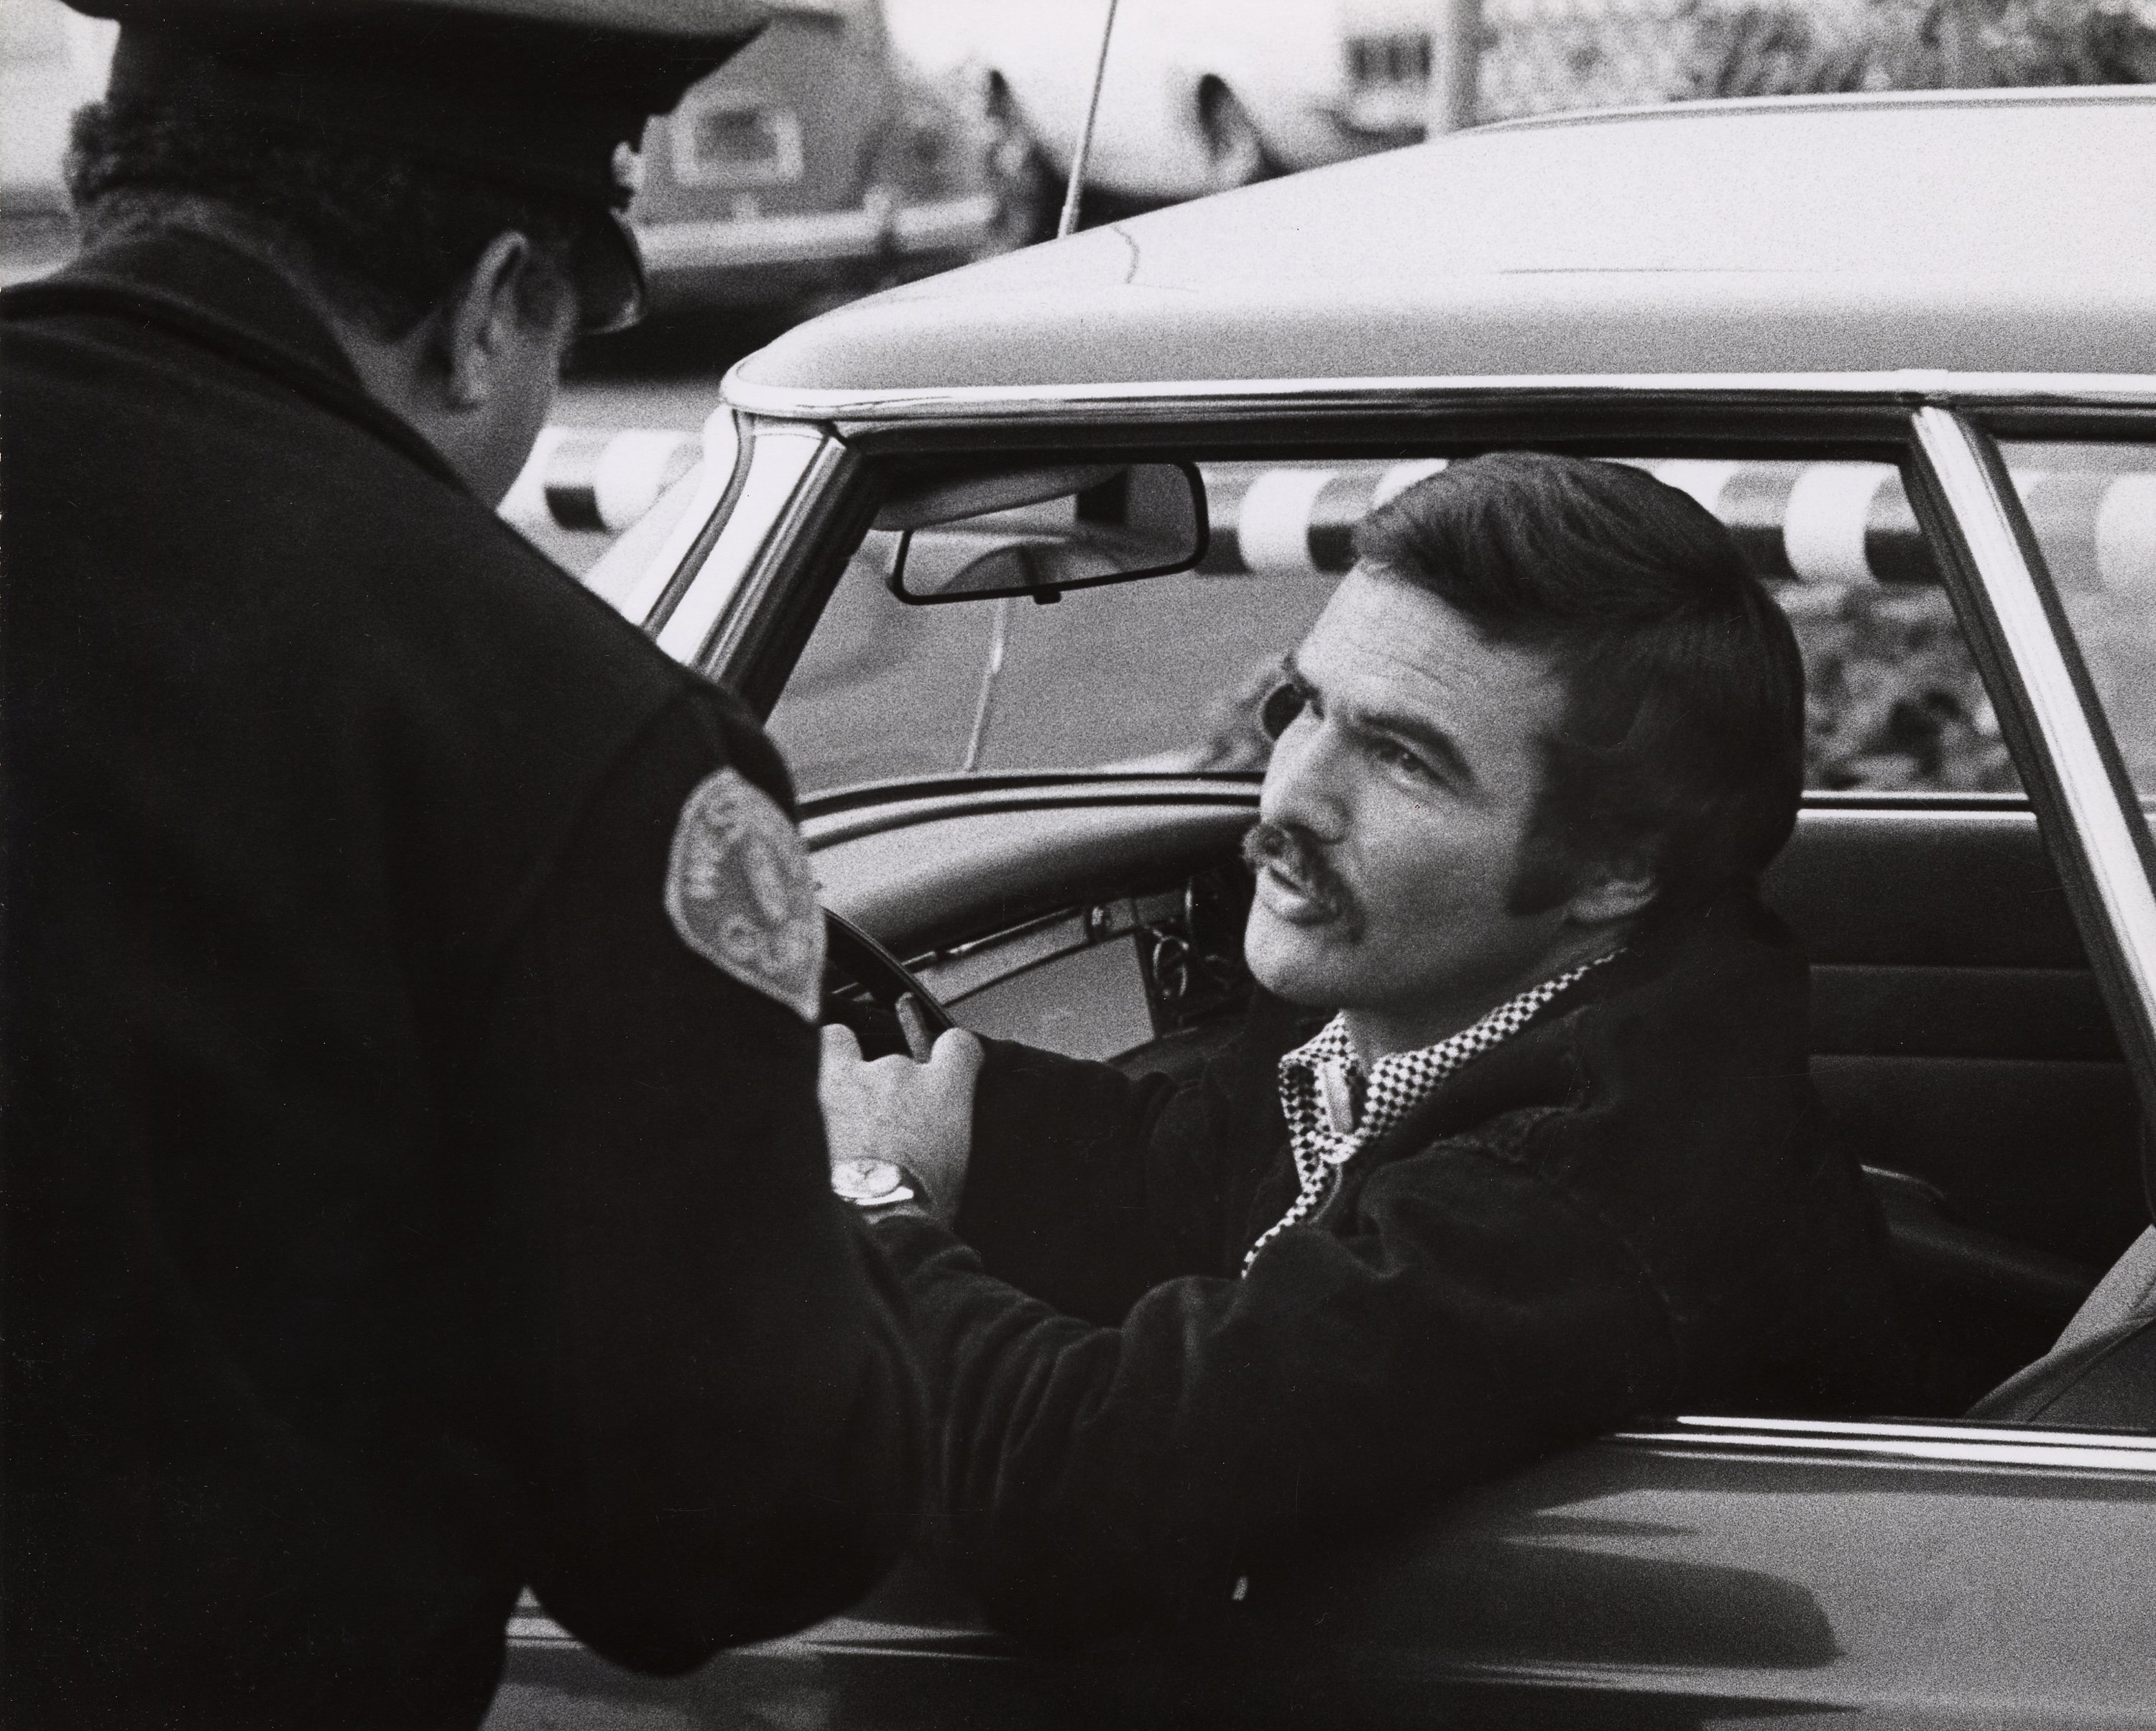 Burt Reynolds in a car